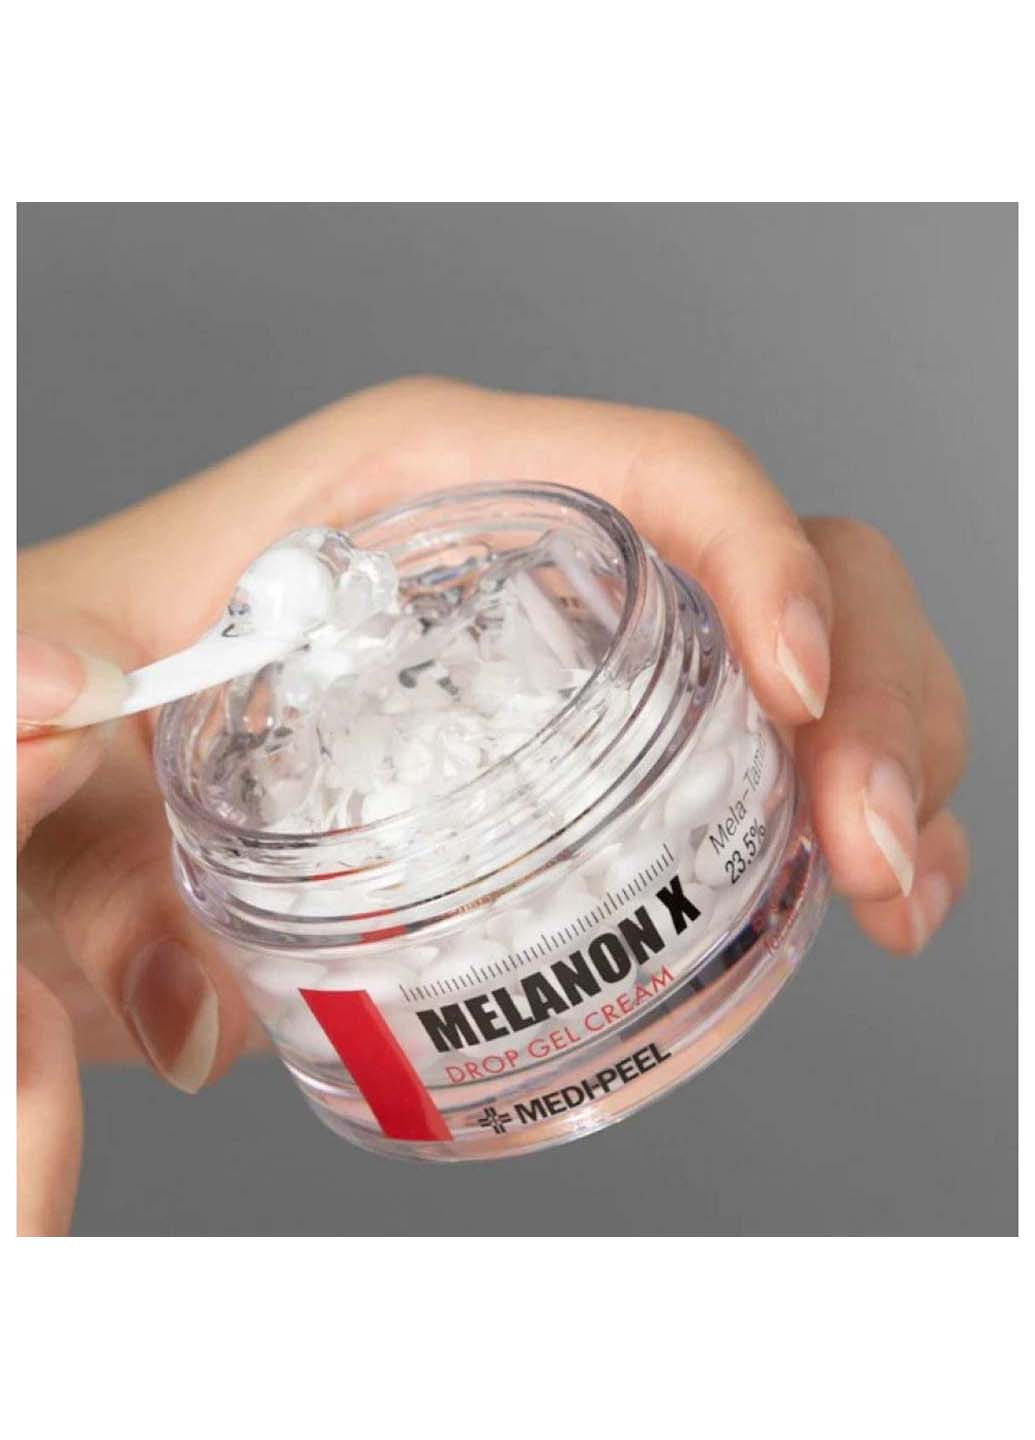 Капсульний гель-крем з ретинолом для омолодження освітлення та зволоження шкіри Melanon X Drop Gel Cream 50 мл Medi-Peel (266997135)